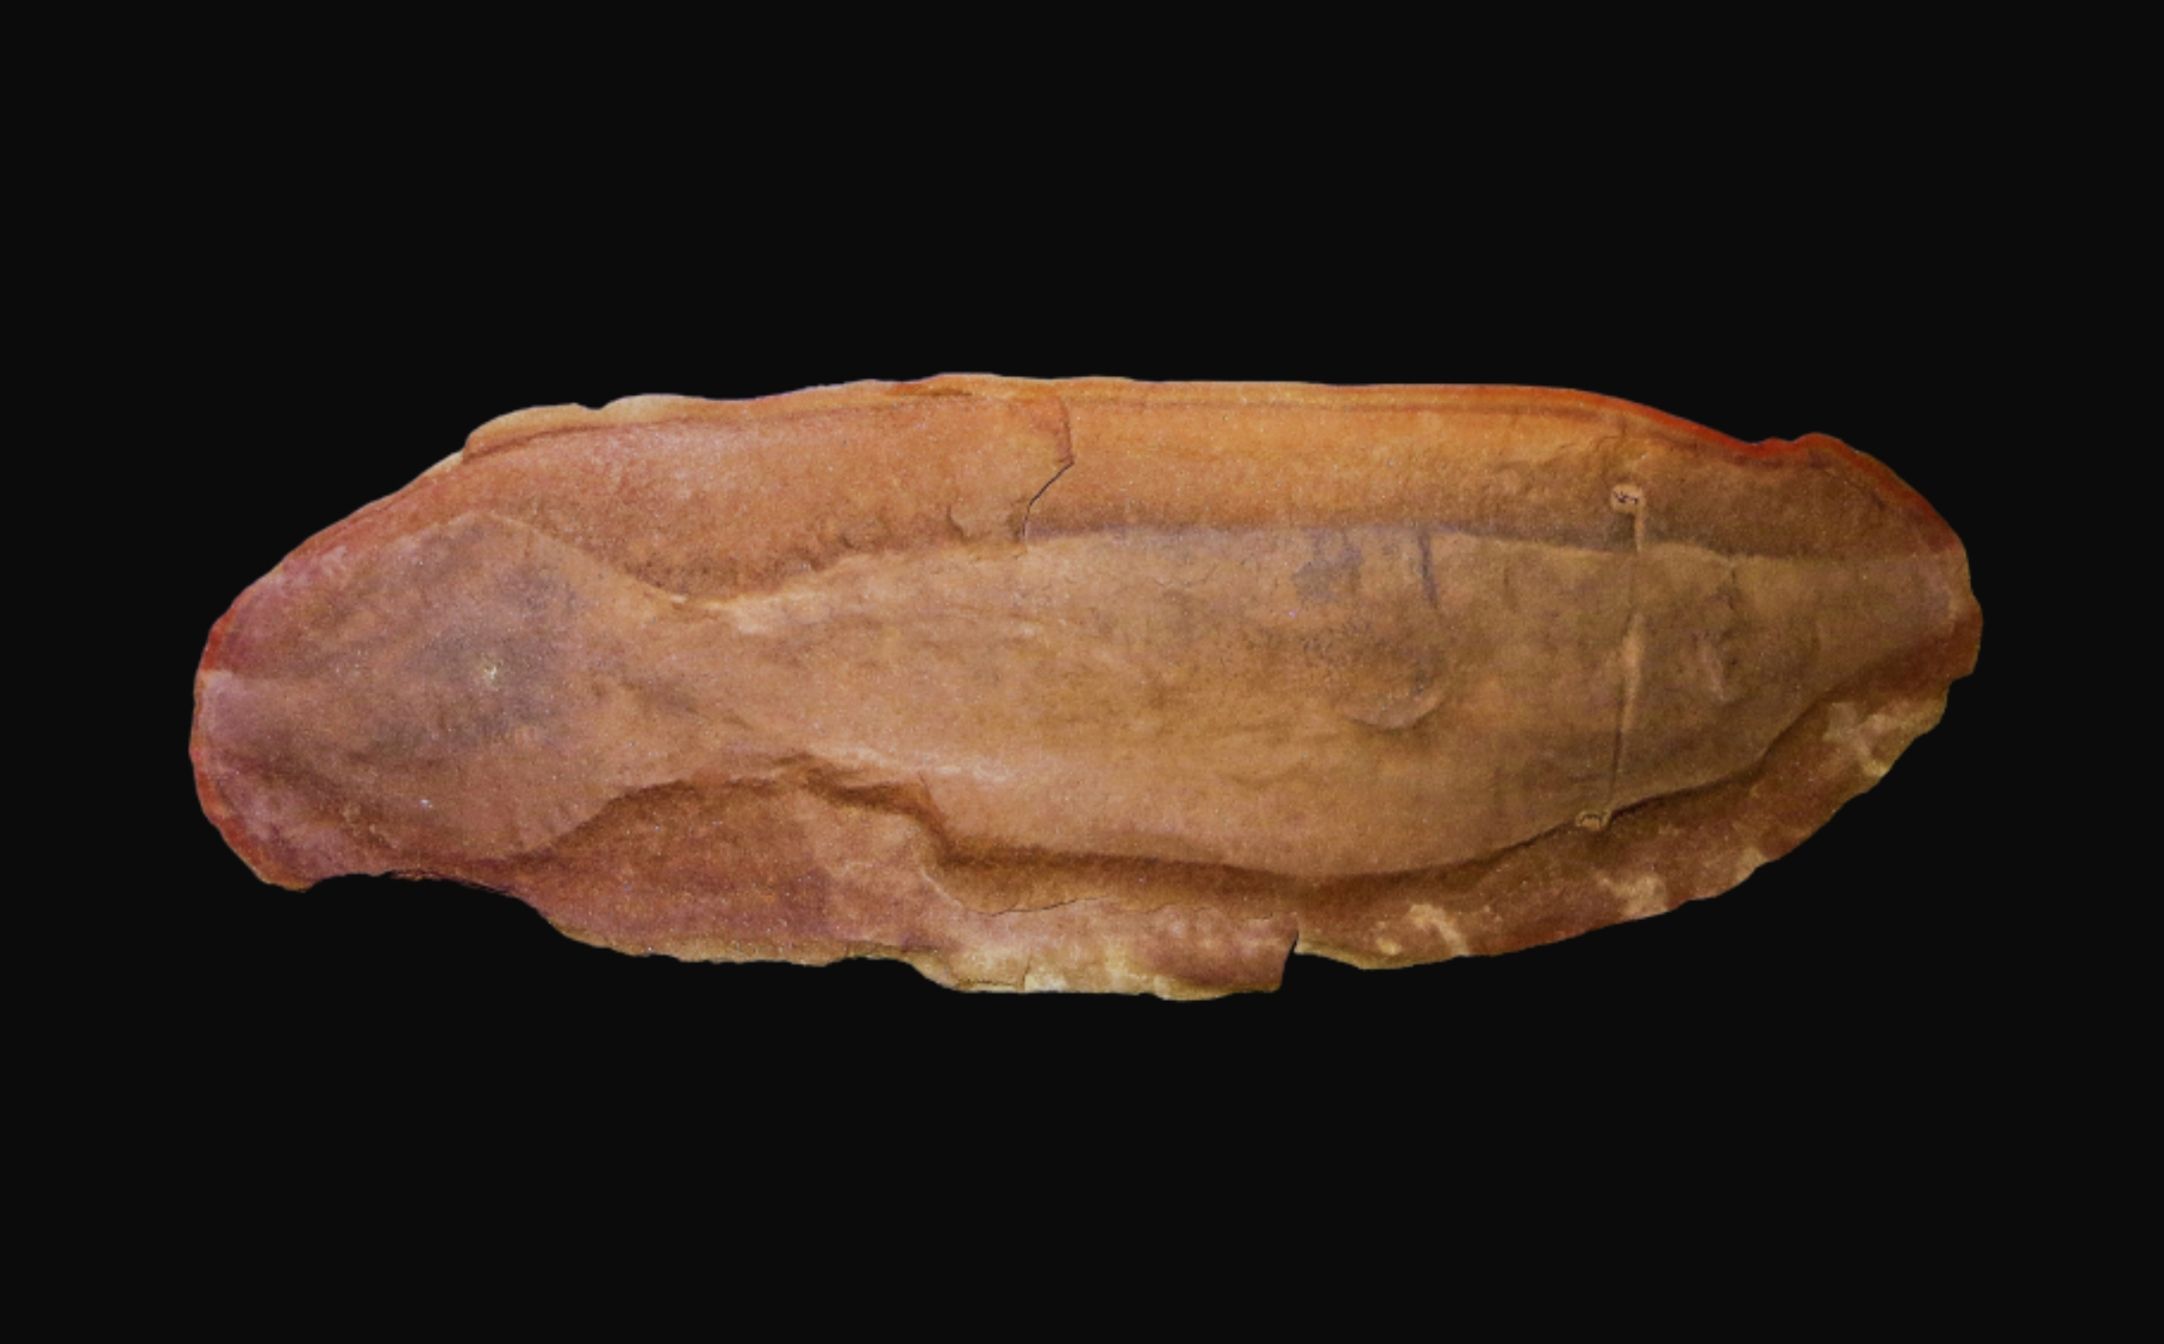 ಟುಲ್ಲಿ ಮಾನ್ಸ್ಟರ್ - ನೀಲಿ 1 ರಿಂದ ನಿಗೂಢ ಇತಿಹಾಸಪೂರ್ವ ಜೀವಿ